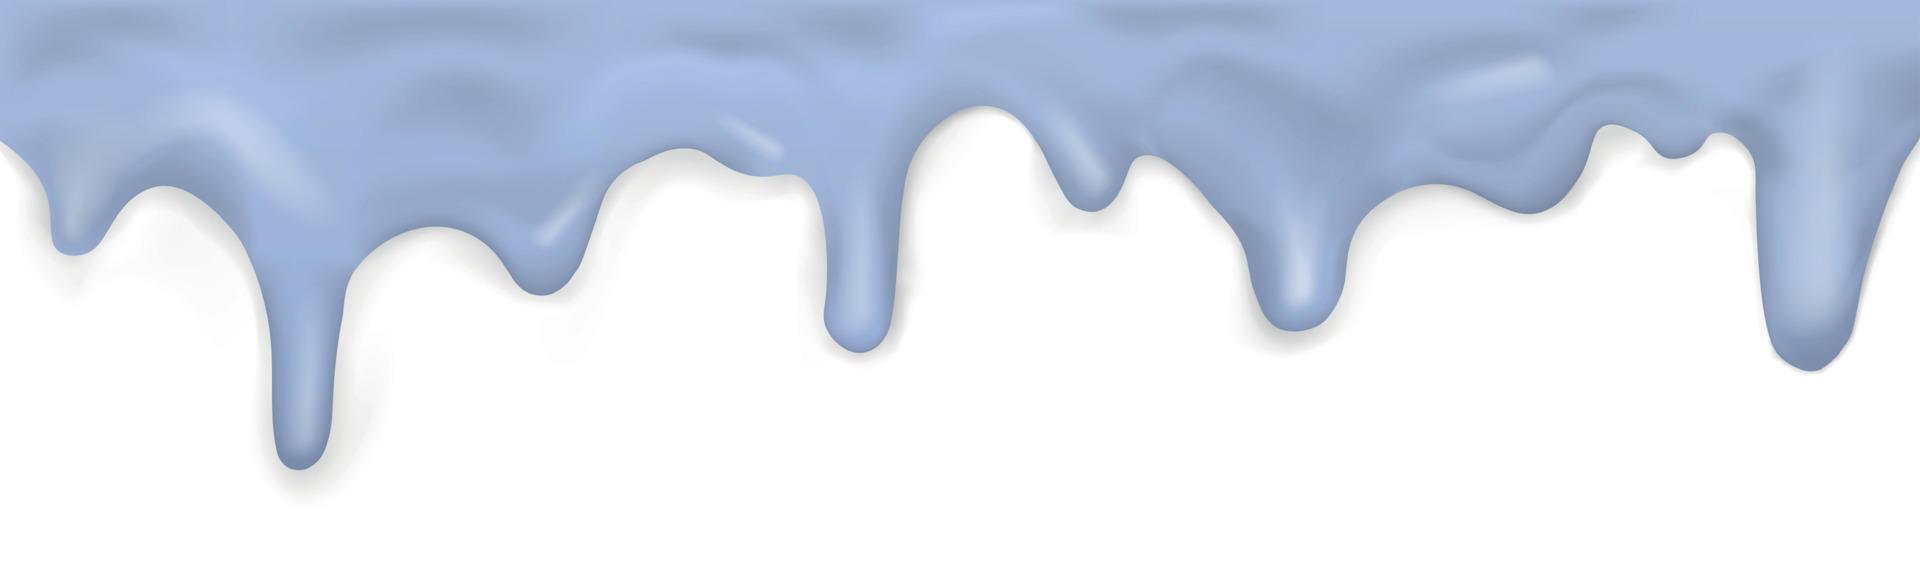 caramelo fluindo, no modelo de fundo branco - vector